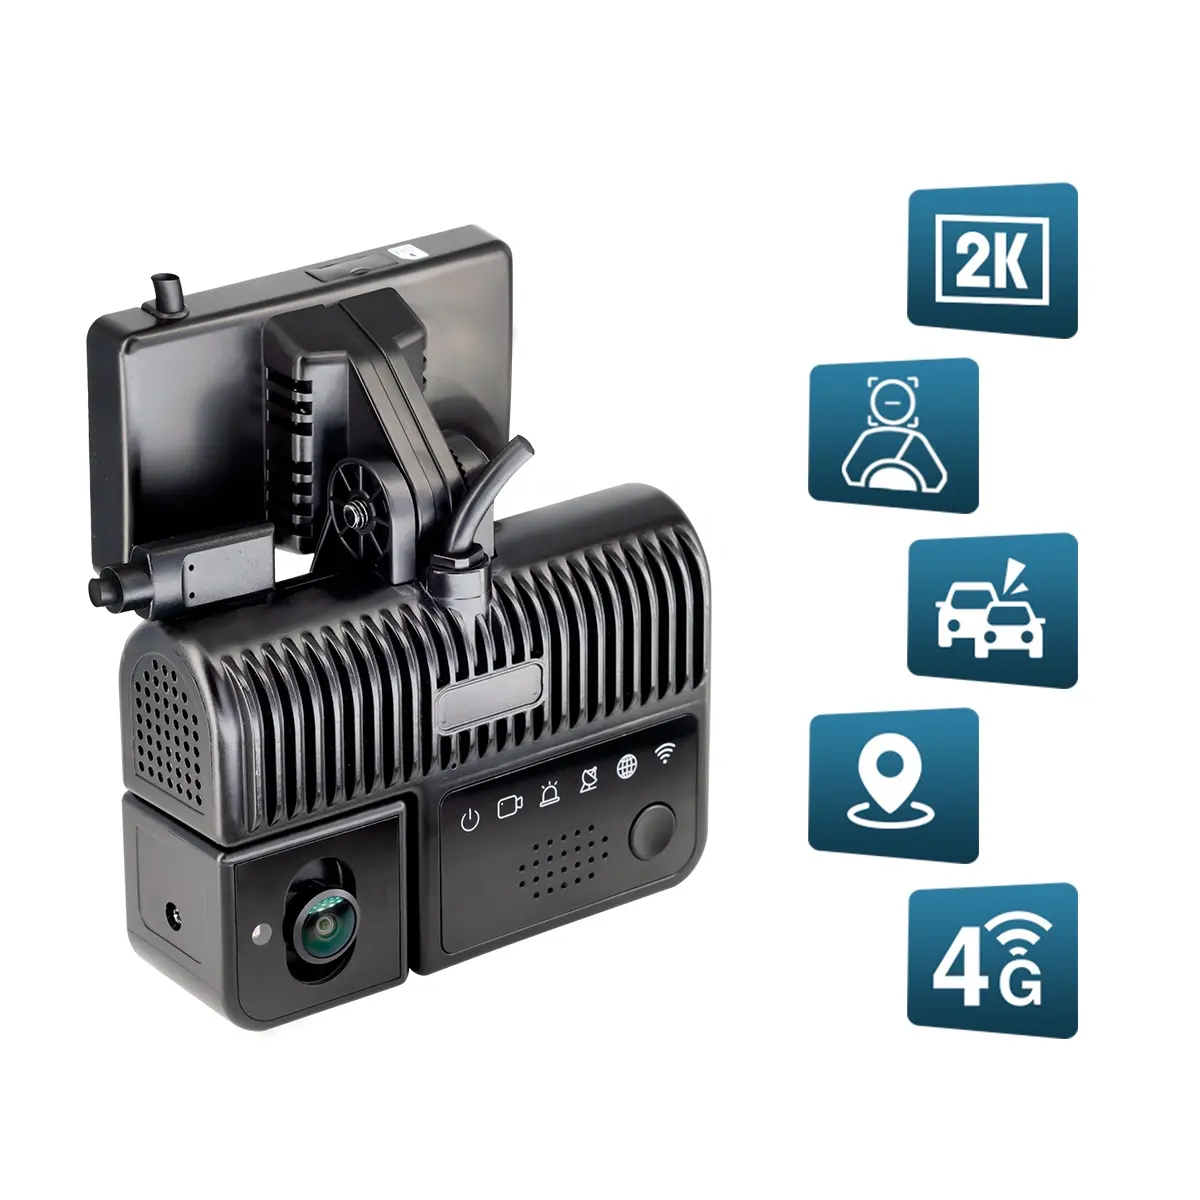 트럭 용 피로 감지 카메라가있는 STONKAM 2K GPS WDR ADAS 4G AI Dashcam 비디오 레코더